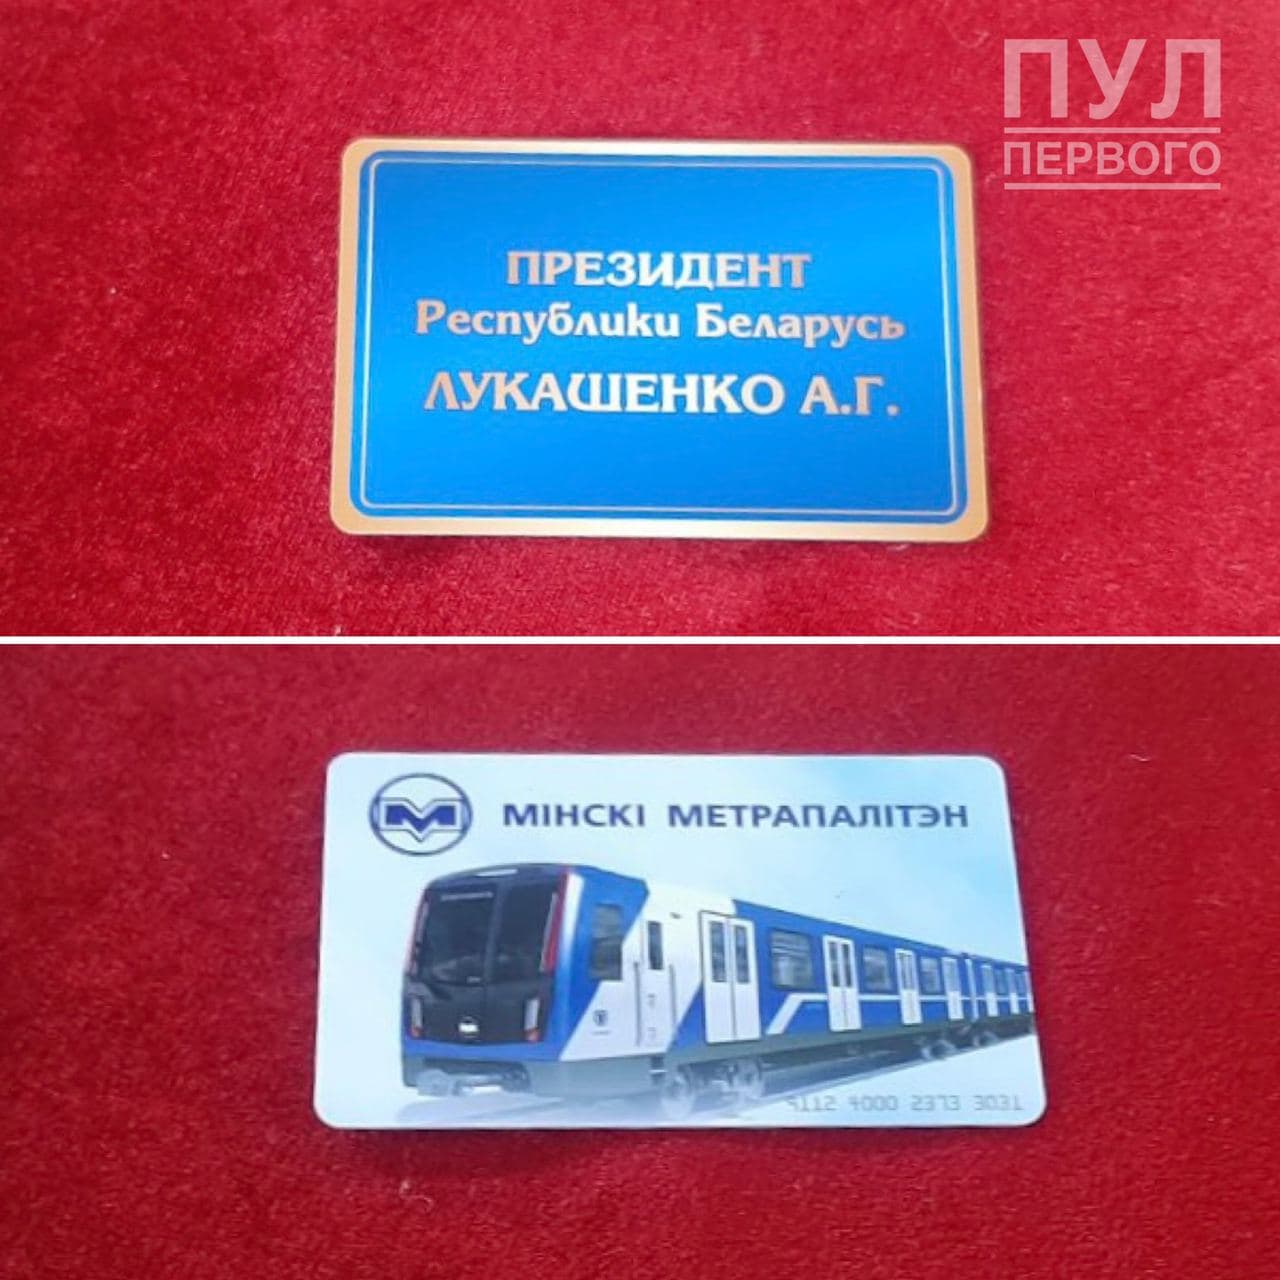 Лукашенко получит персональный проездной на метро